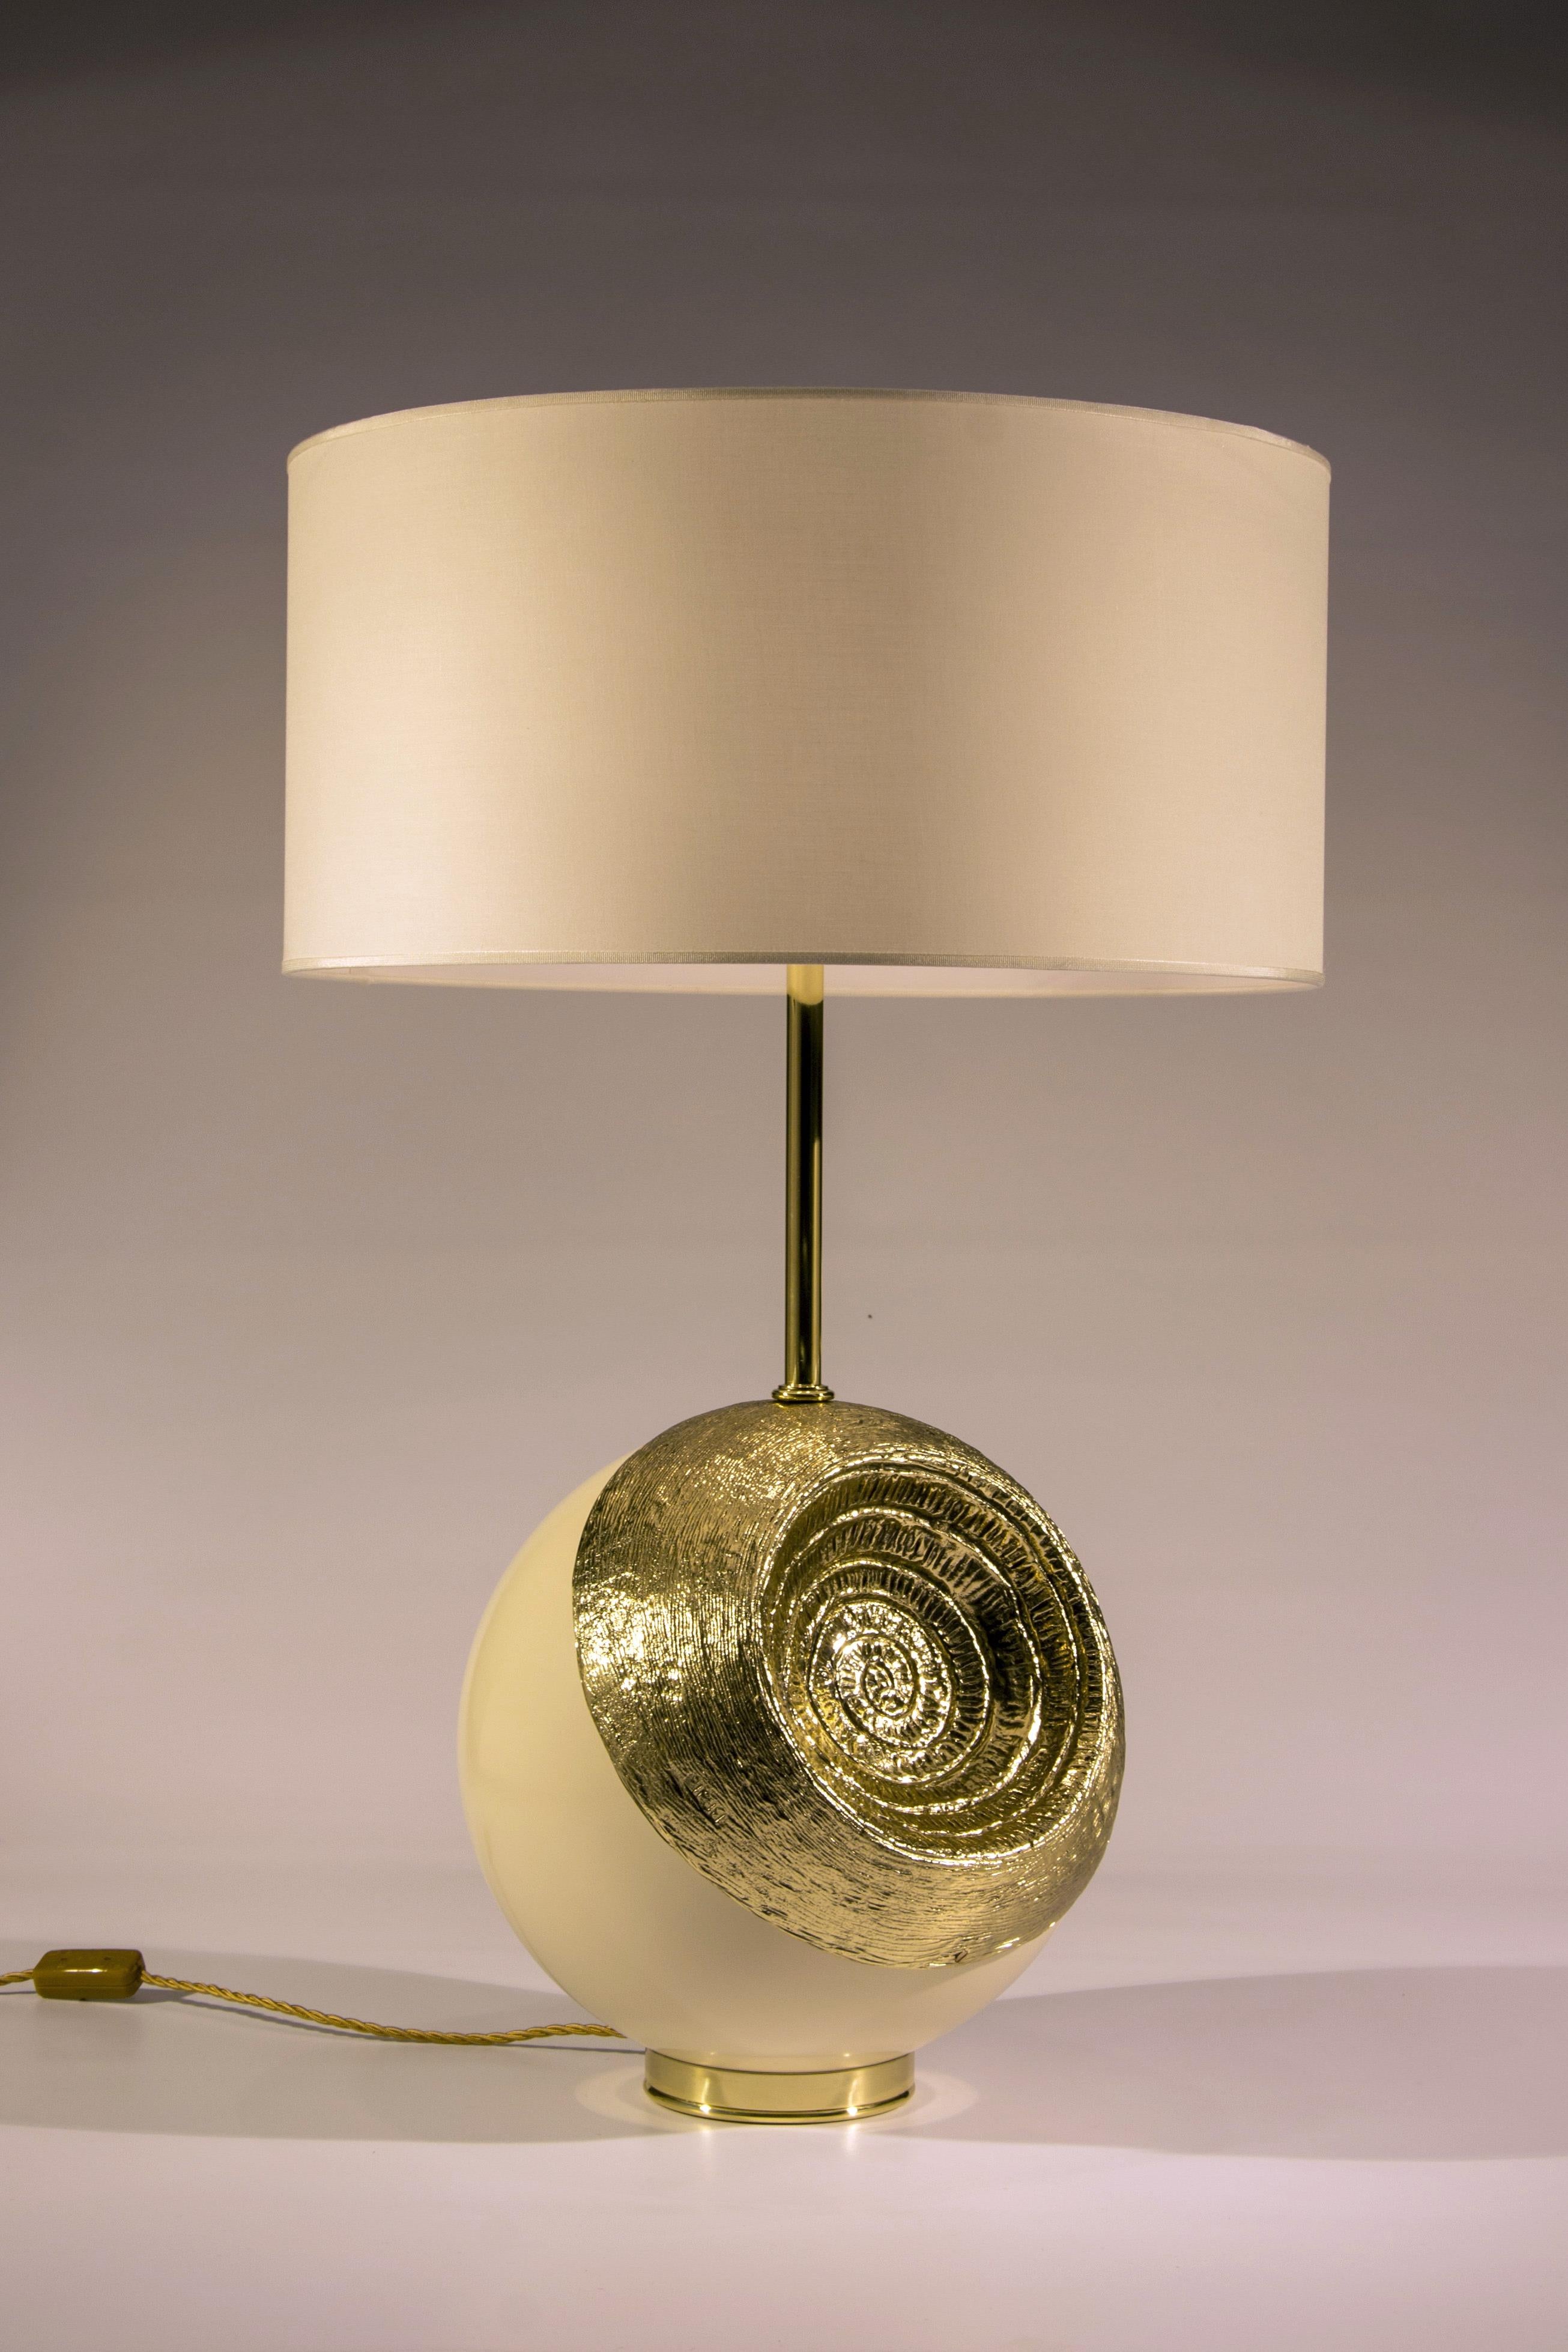 Lampe mit wichtigem Skulpturensockel aus künstlerischem Messingguss. Ursprünglich wurde die Kugel am Sockel von Angelo Brotto 1977 als Tischskulptur konzipiert. Der hintere Teil der Kugel ist in der Messingversion (wie auf dem Foto) und in der